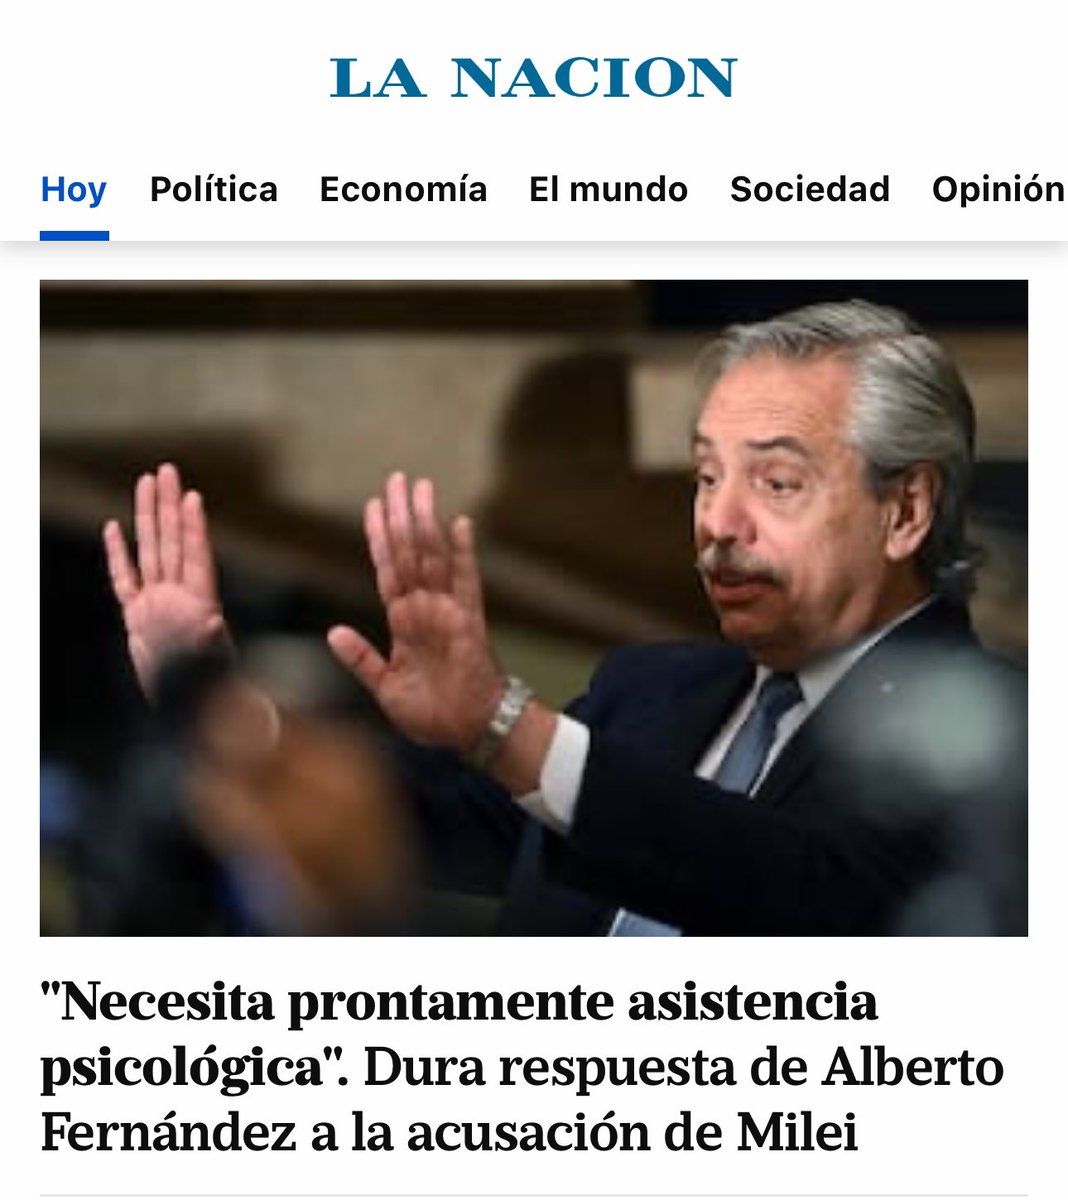 #BuenMartes Lo mejor que le podría pasar al Presidente Milei es que Alberto Fernández se posicione como su NÉMESIS antagónica. Un ex Presidente que no fue capaz ni siquiera de manejar un consorcio. Con esta “oposición” hay Milei para 30 años.